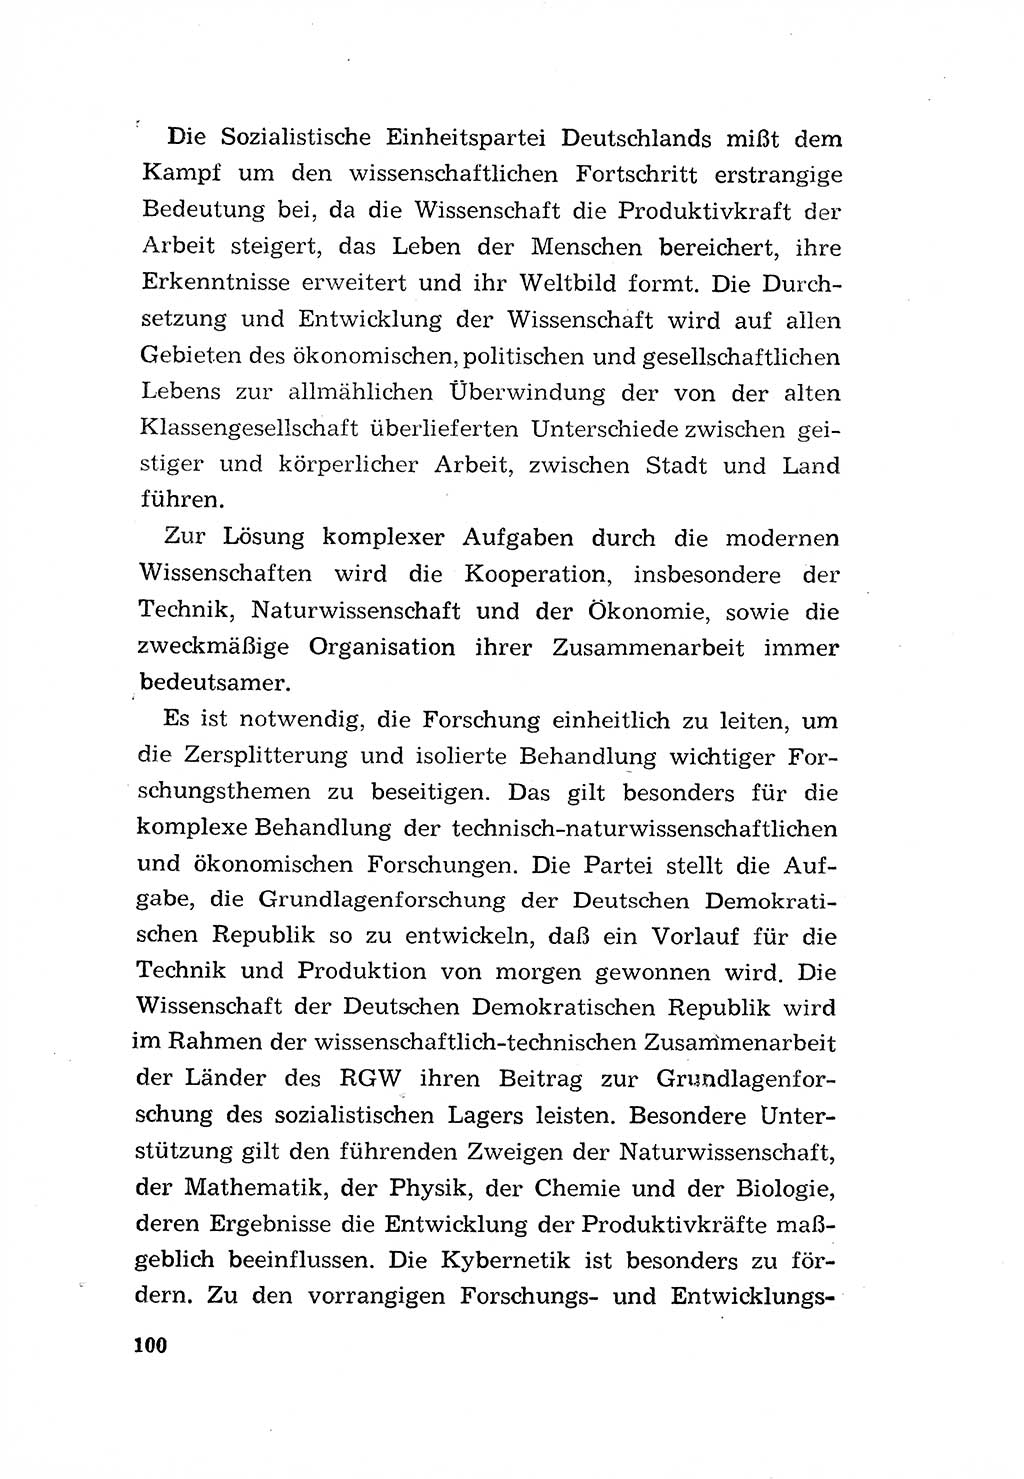 Programm der Sozialistischen Einheitspartei Deutschlands (SED) [Deutsche Demokratische Republik (DDR)] 1963, Seite 100 (Progr. SED DDR 1963, S. 100)